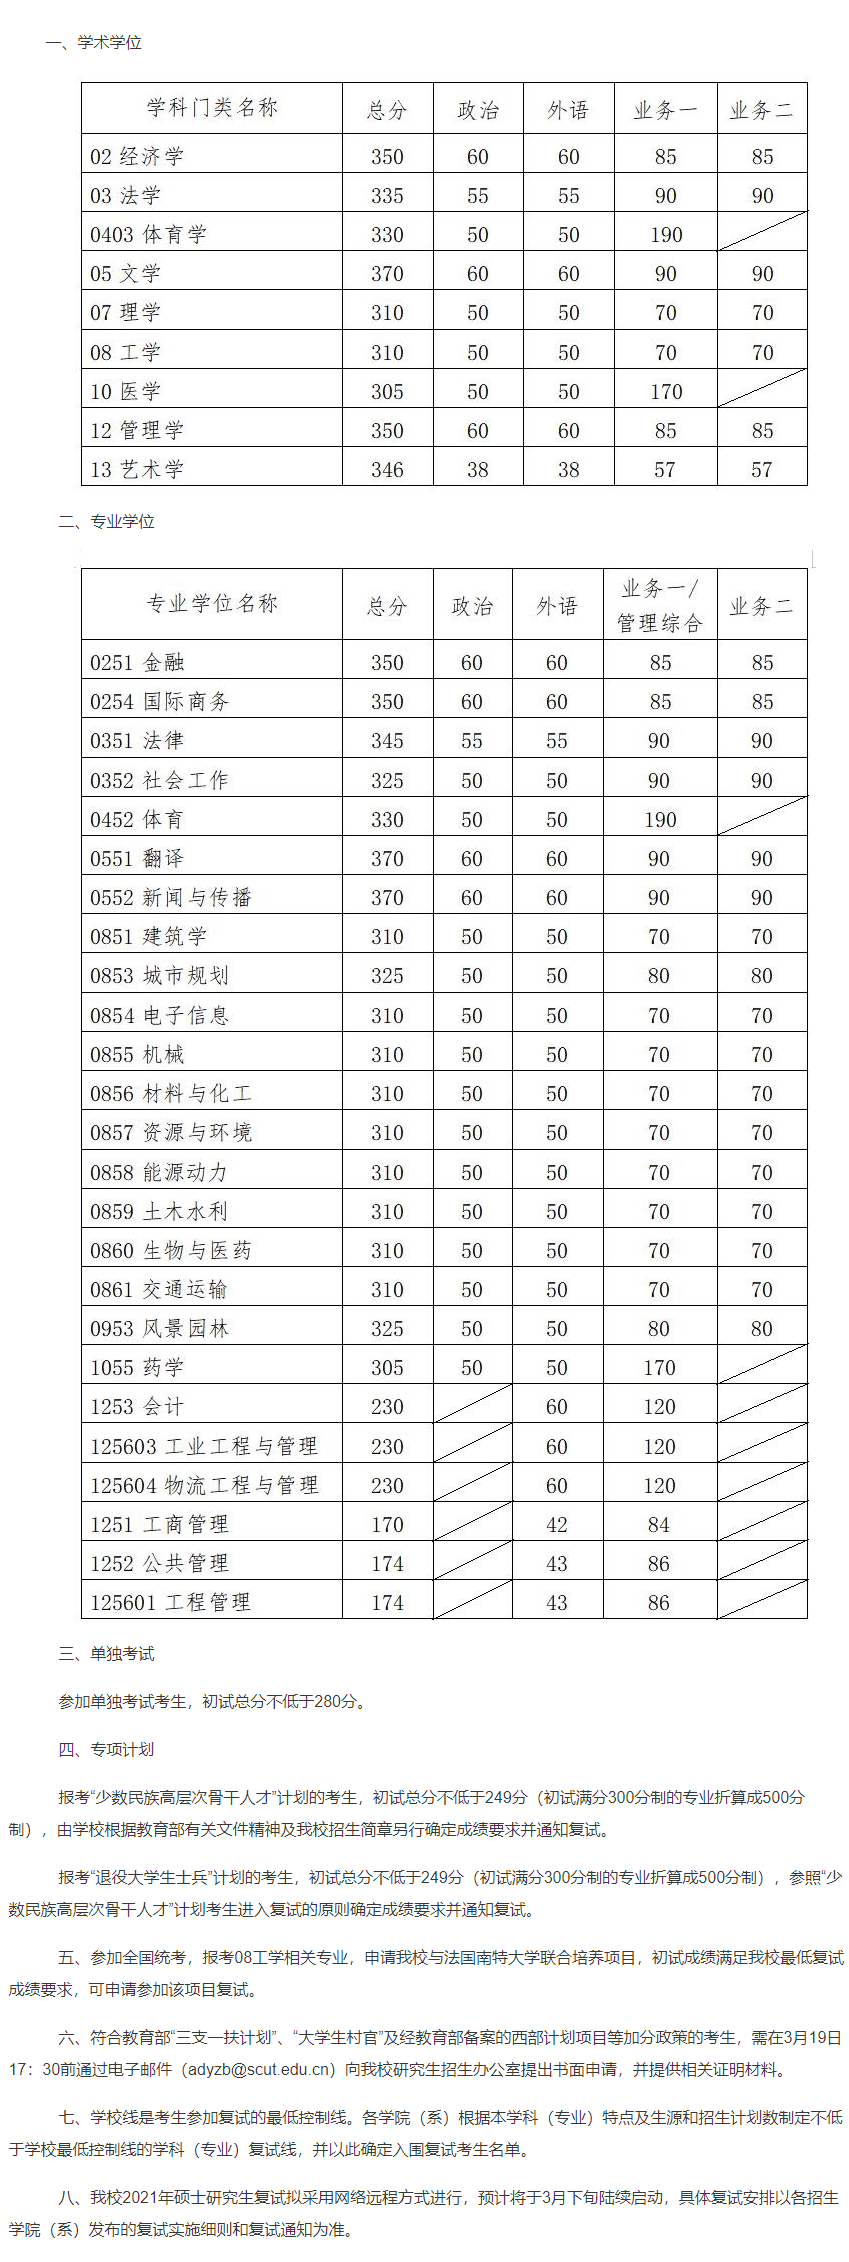 2021年华南理工大学考研分数线详情